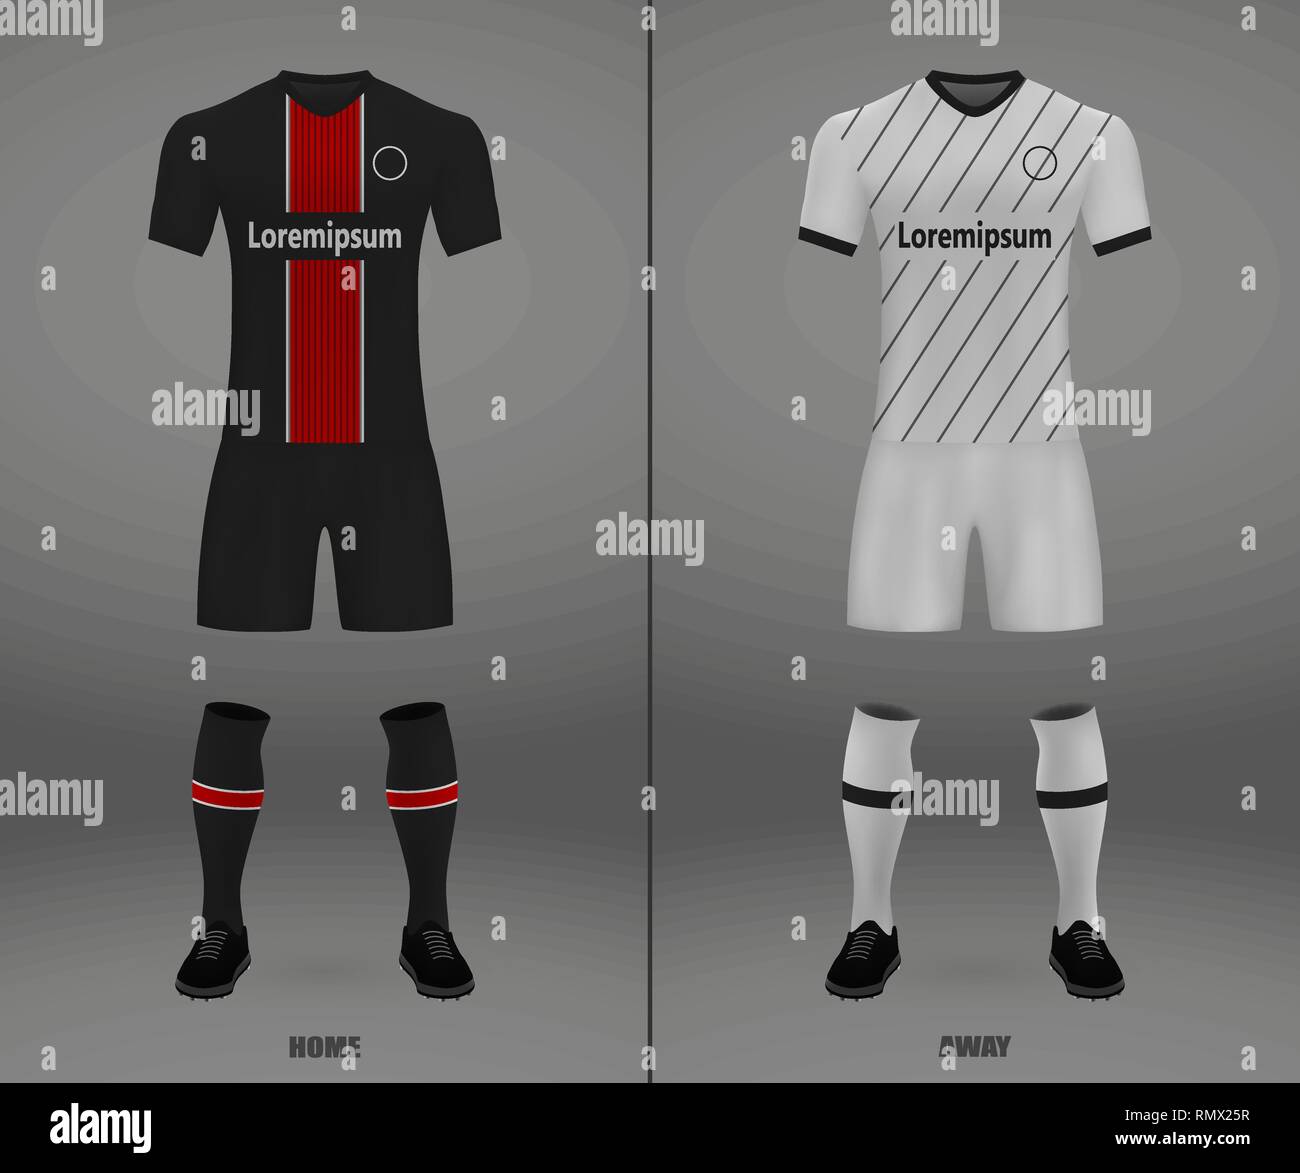 football kit Bayer Leverkusen 2018-19, shirt template for soccer jersey.  Vector illustration Stock Vector Image & Art - Alamy